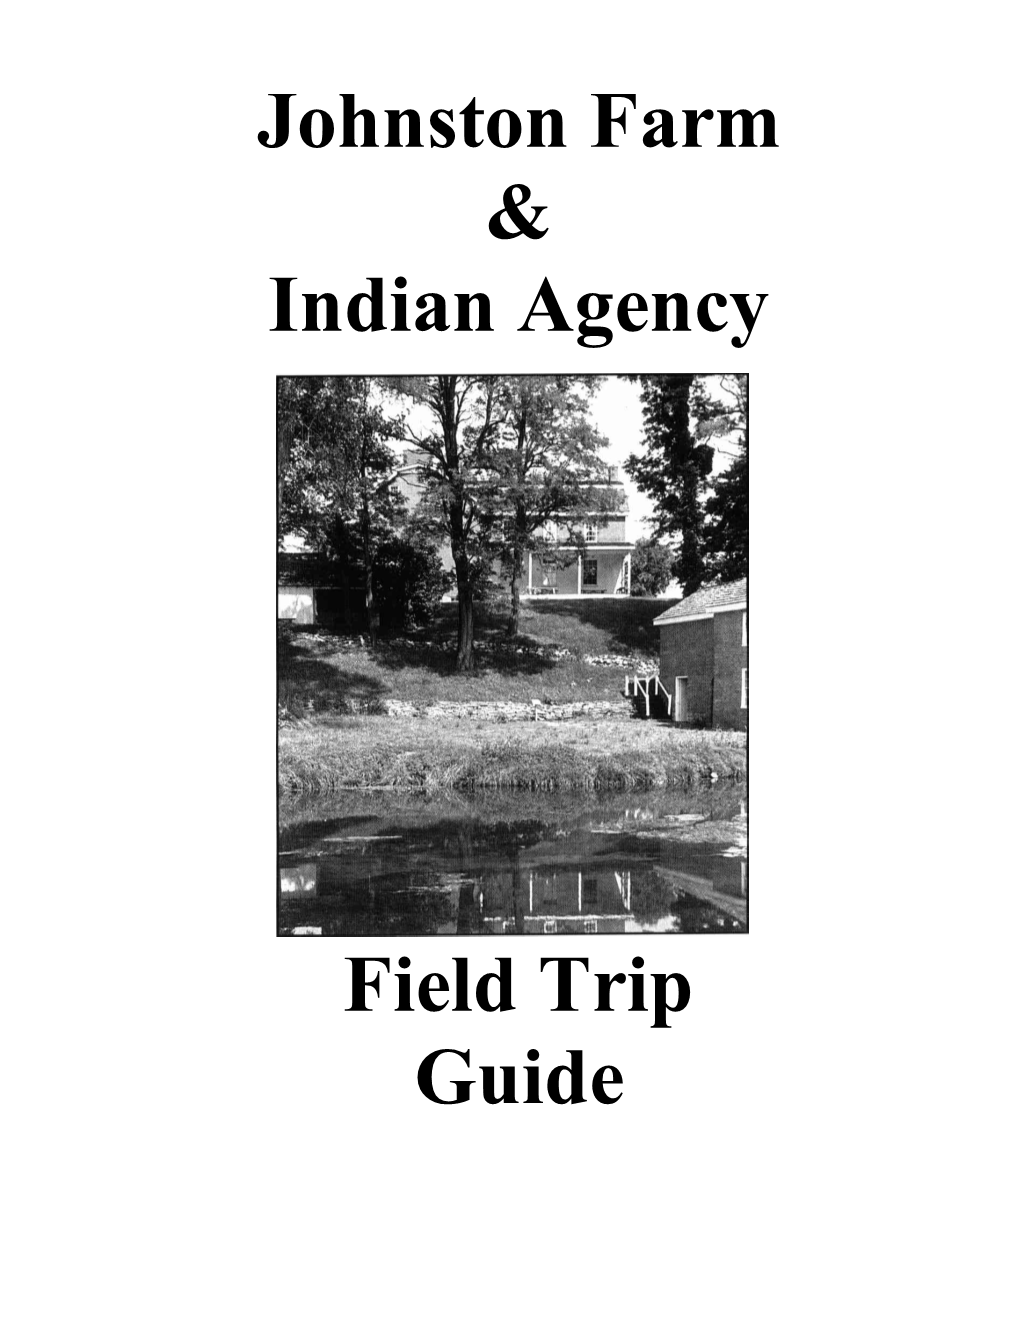 Johnston Farm & Indian Agency Field Trip Guide